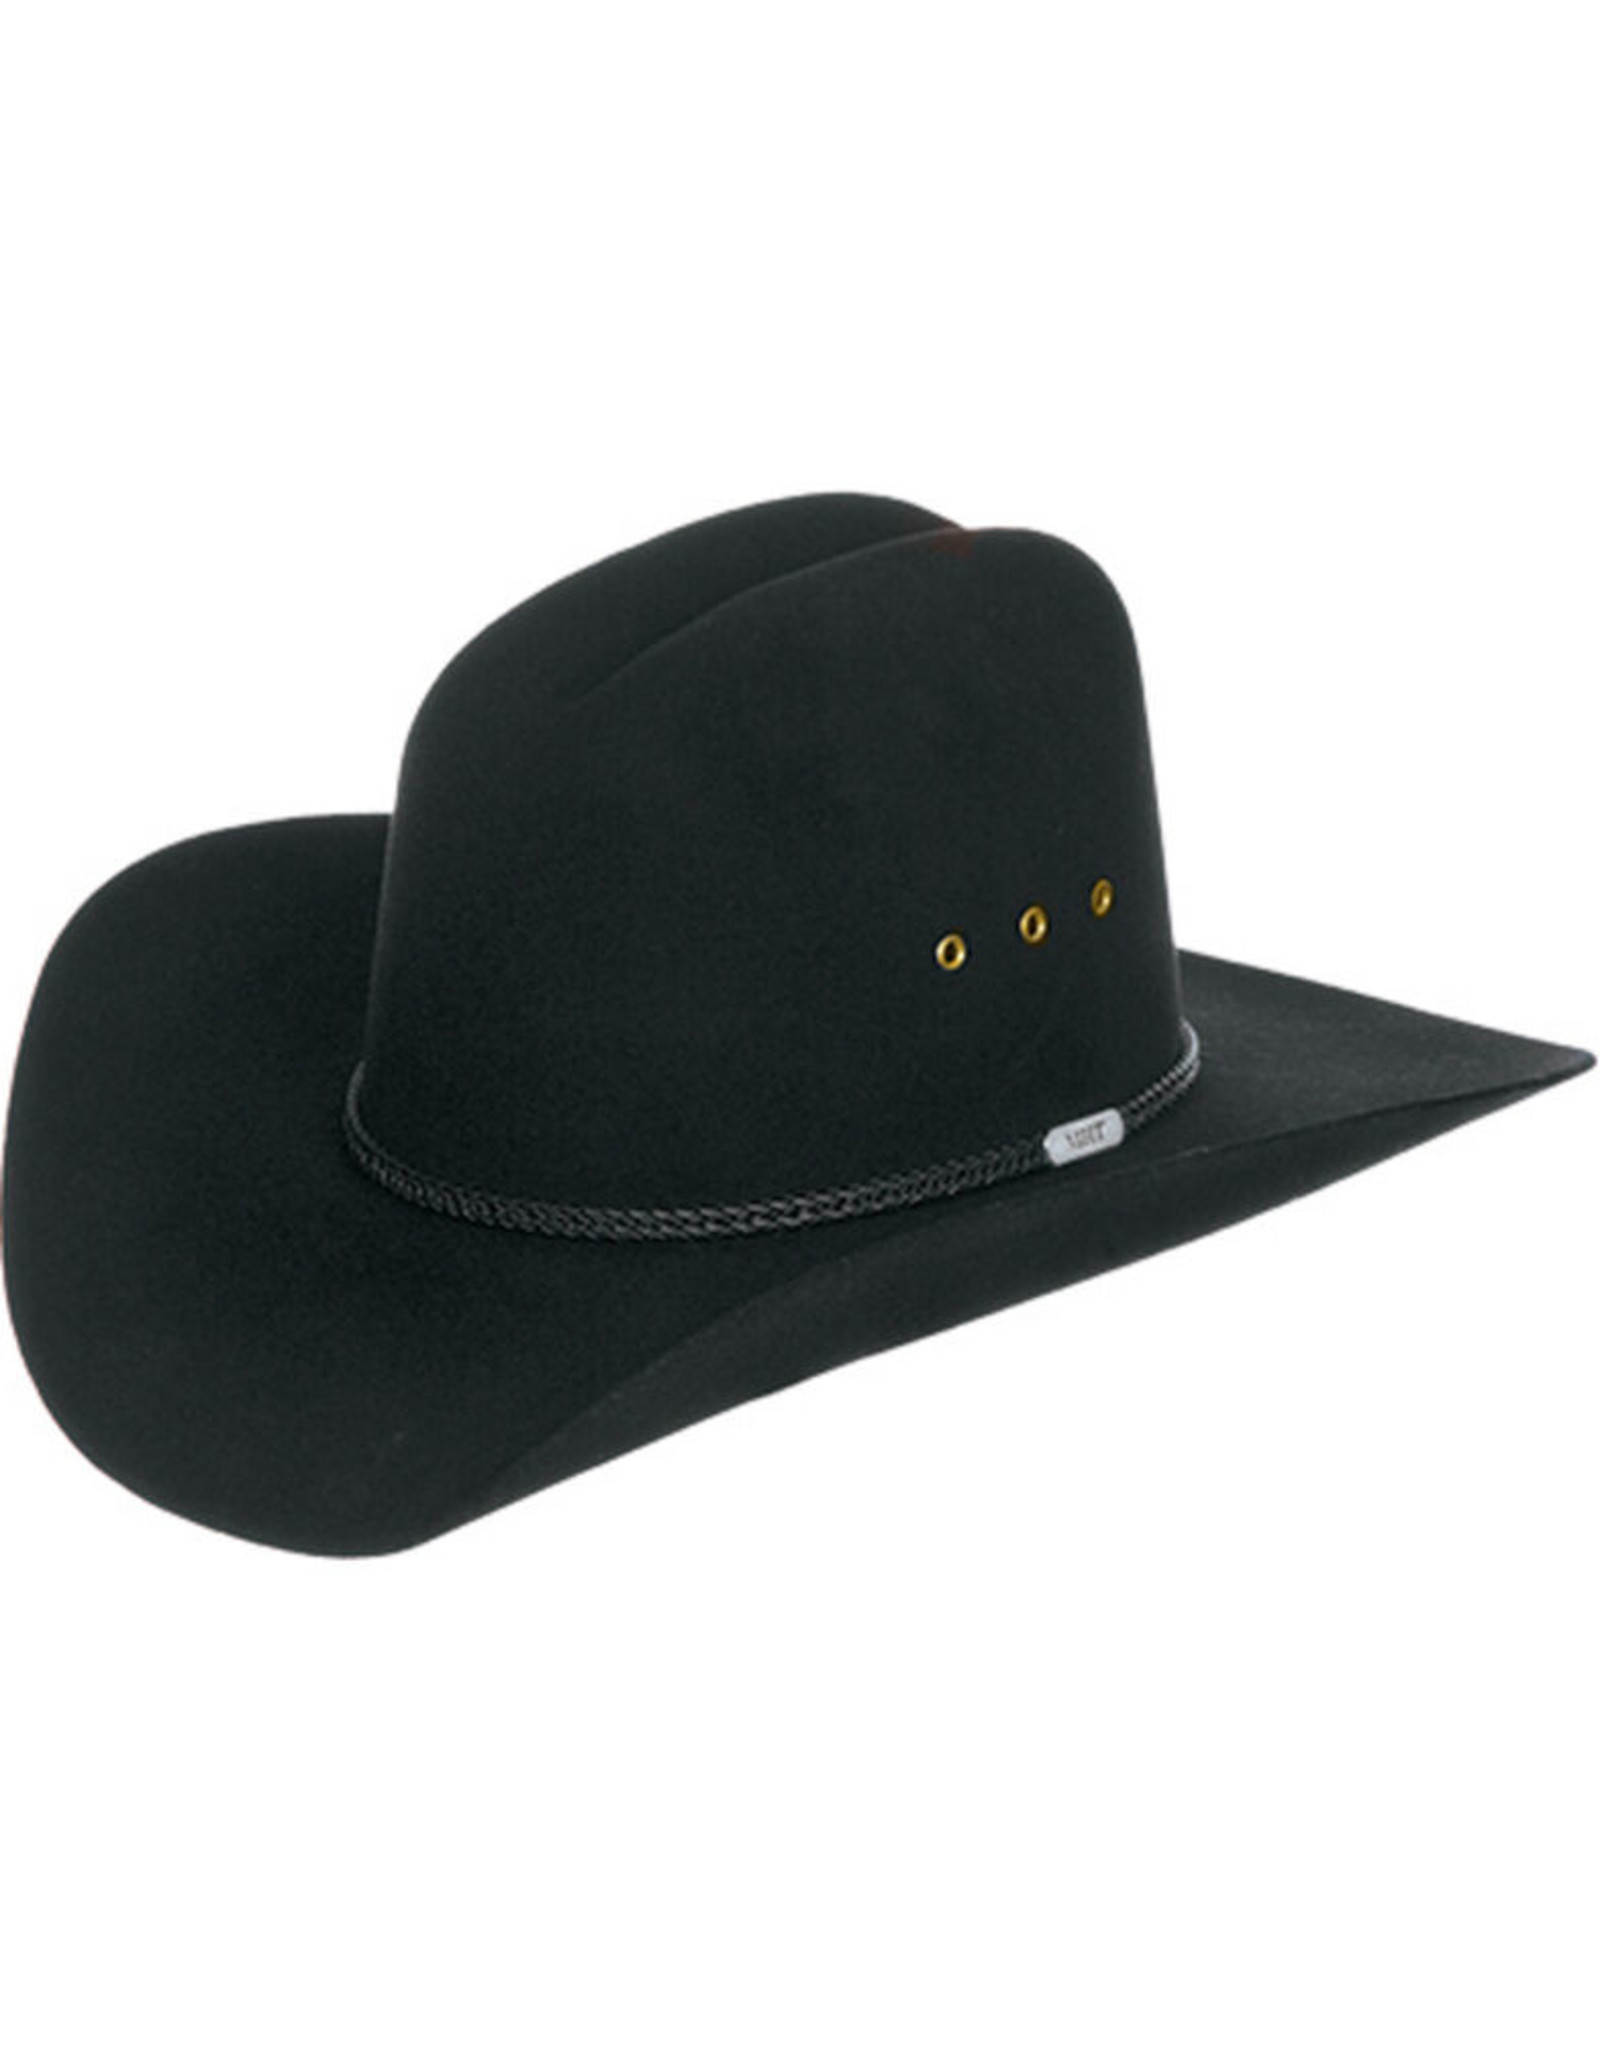 Master Hatters Youth Black Felt Hat MK788107